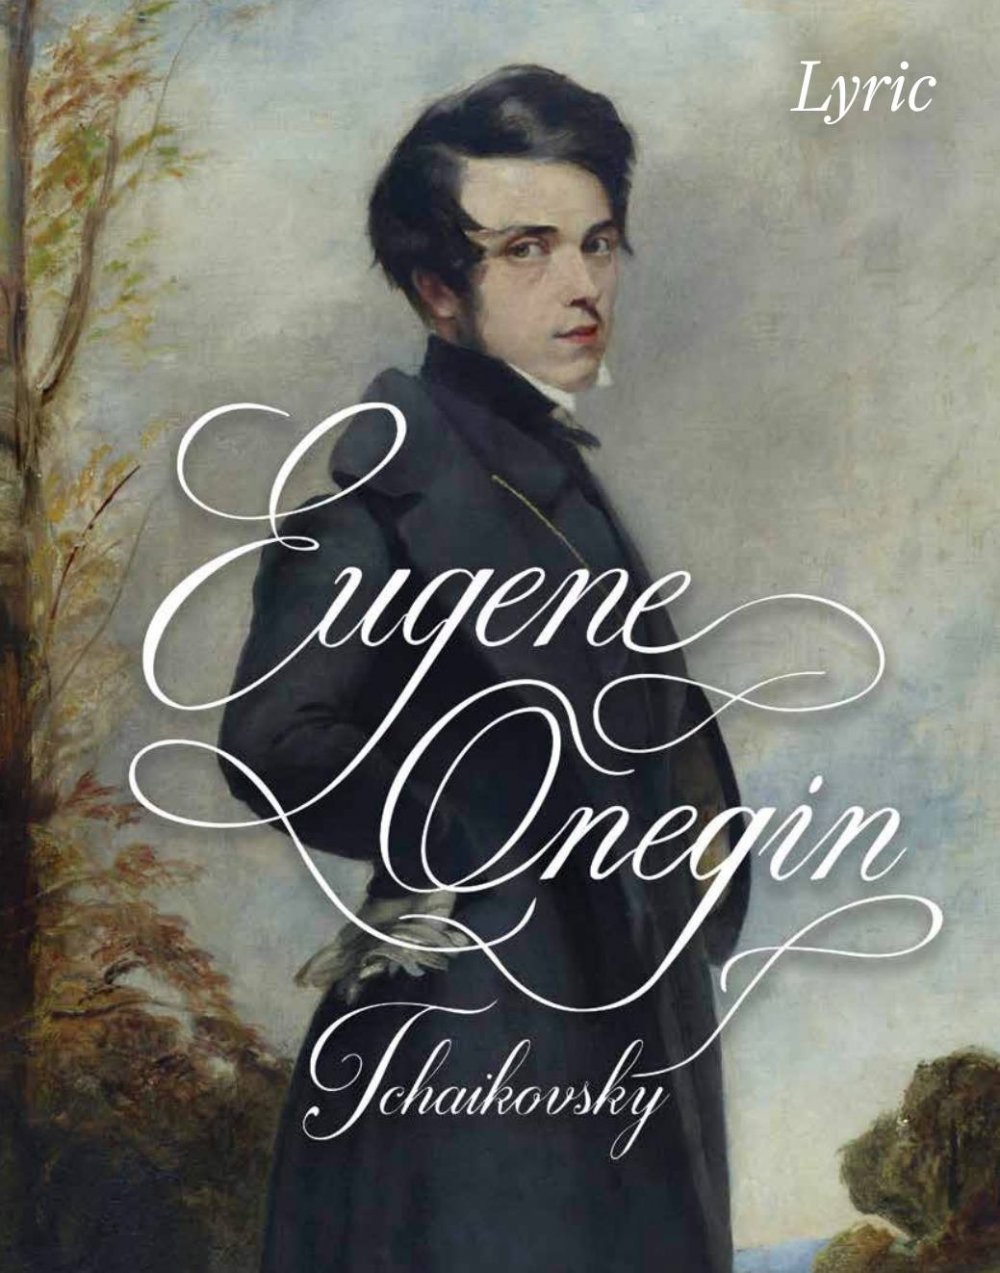 Евгений Онегин обложка книги на английском